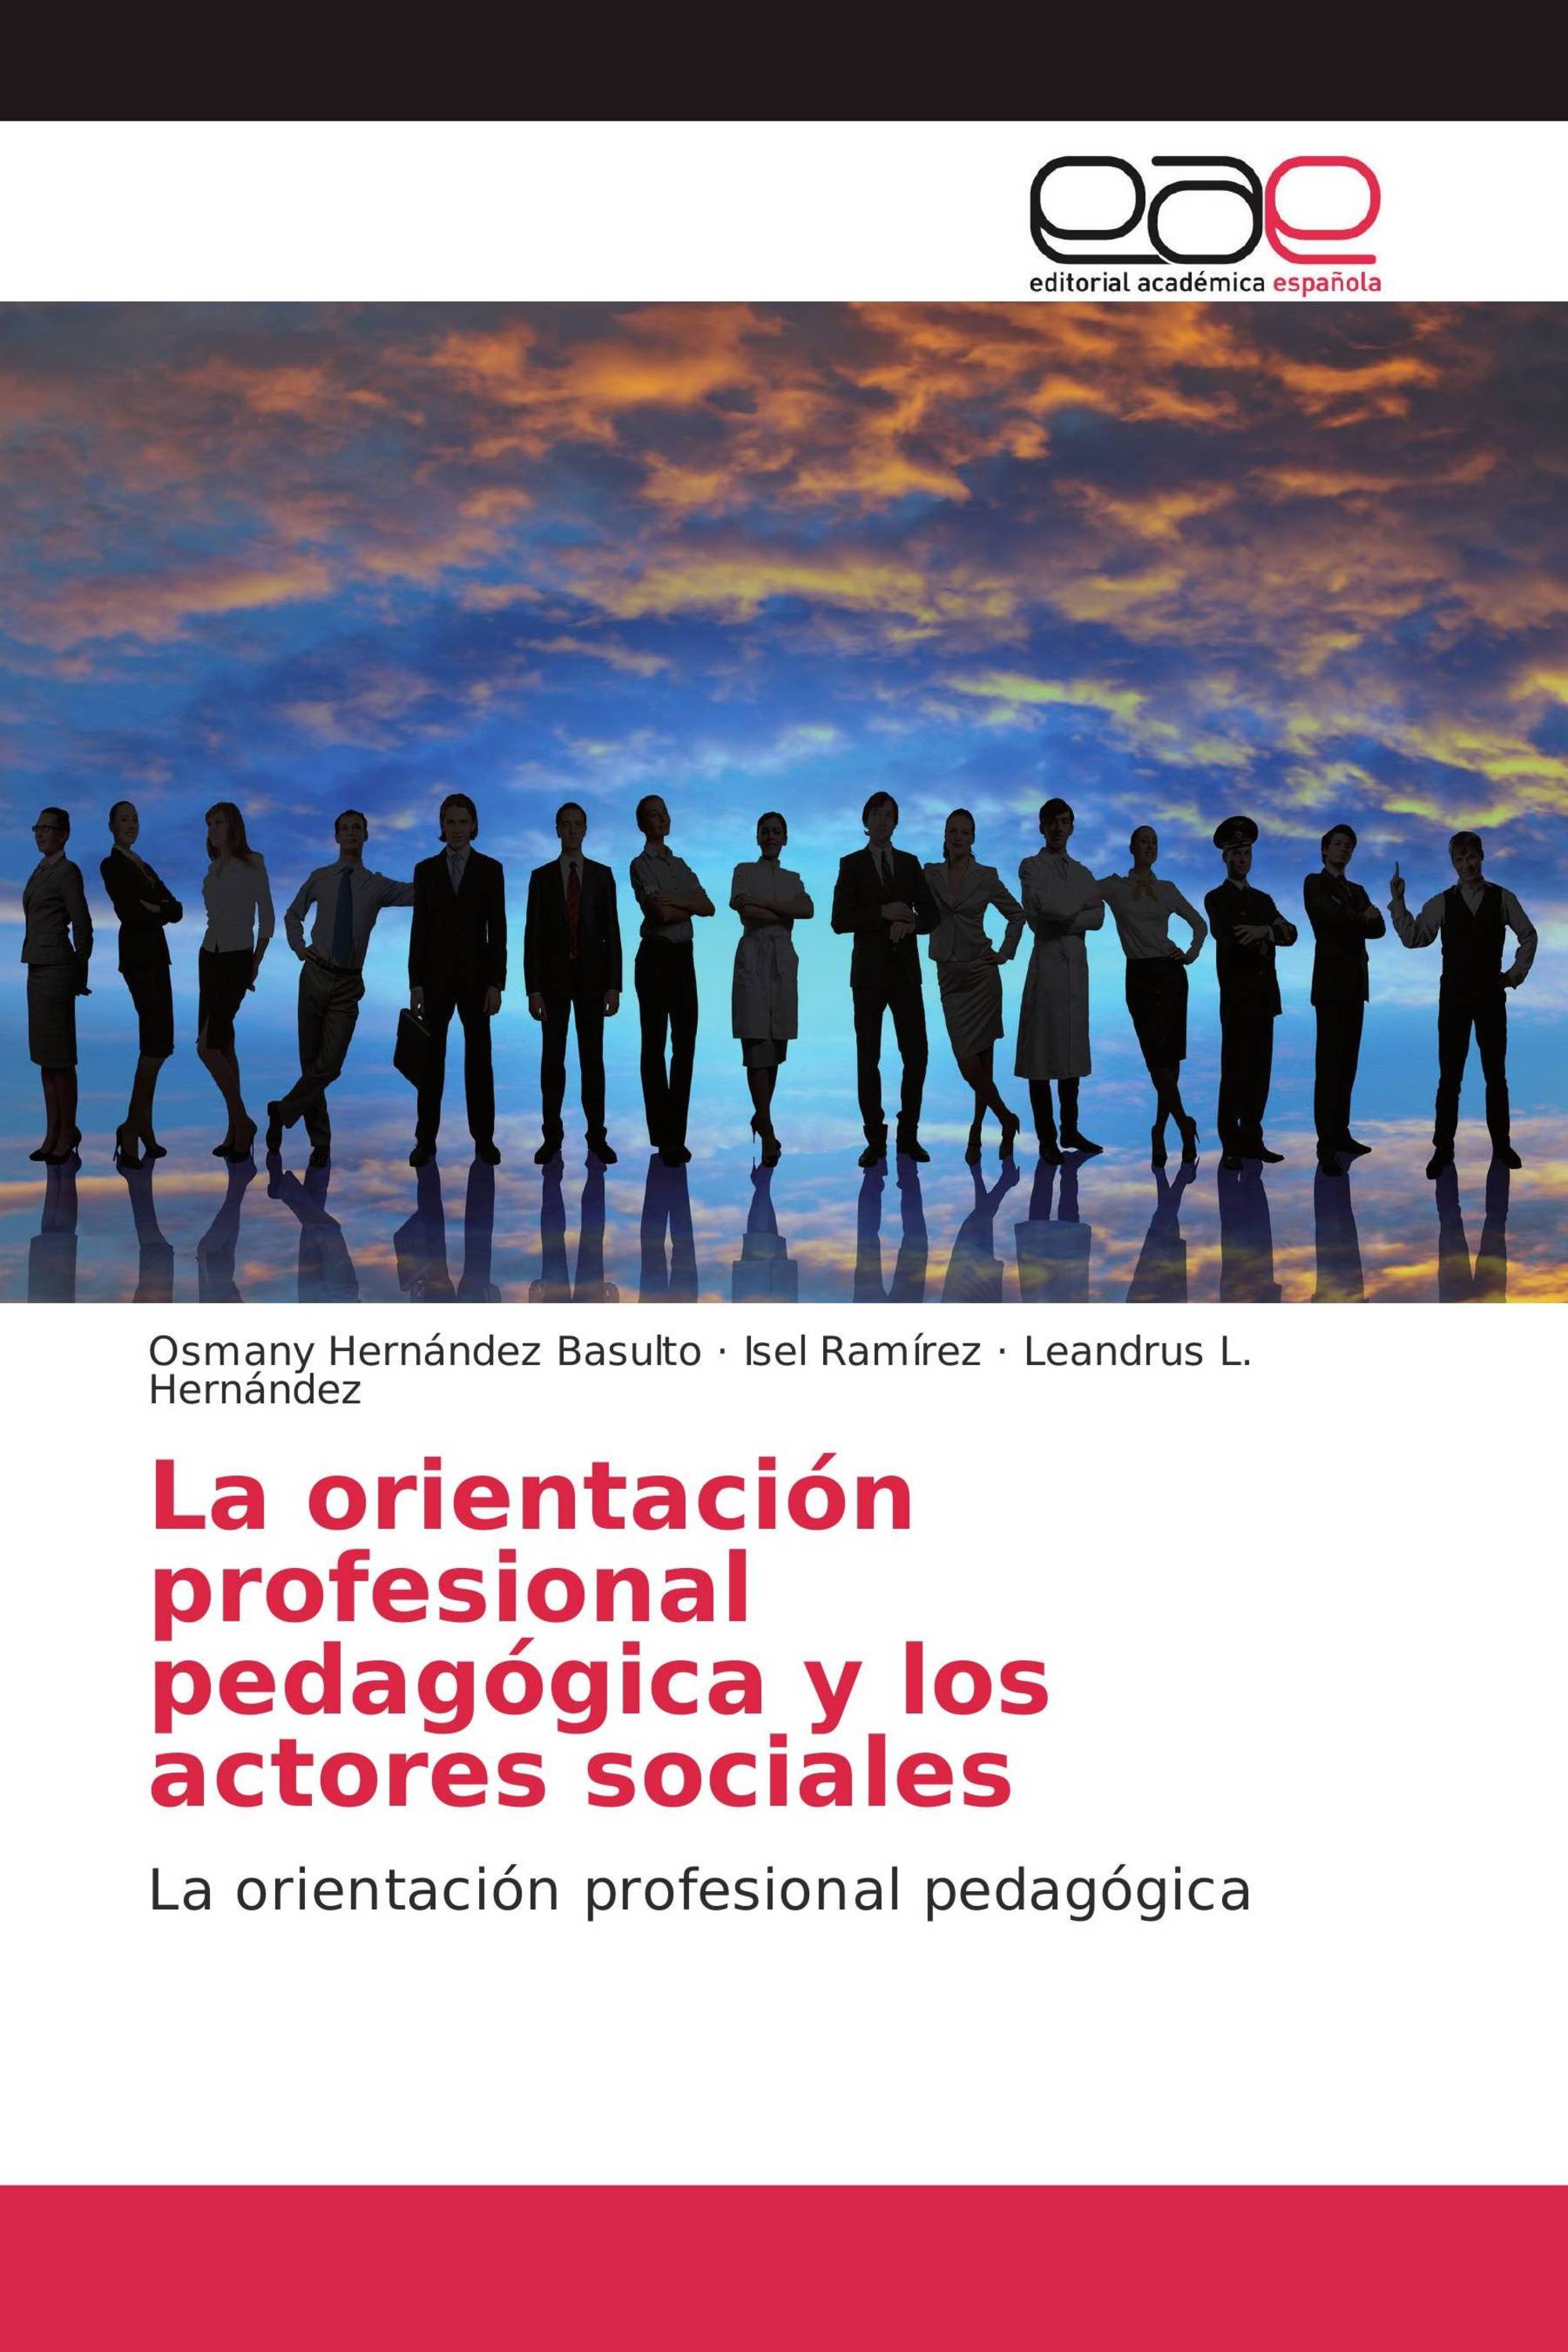 La orientación profesional pedagógica y los actores sociales